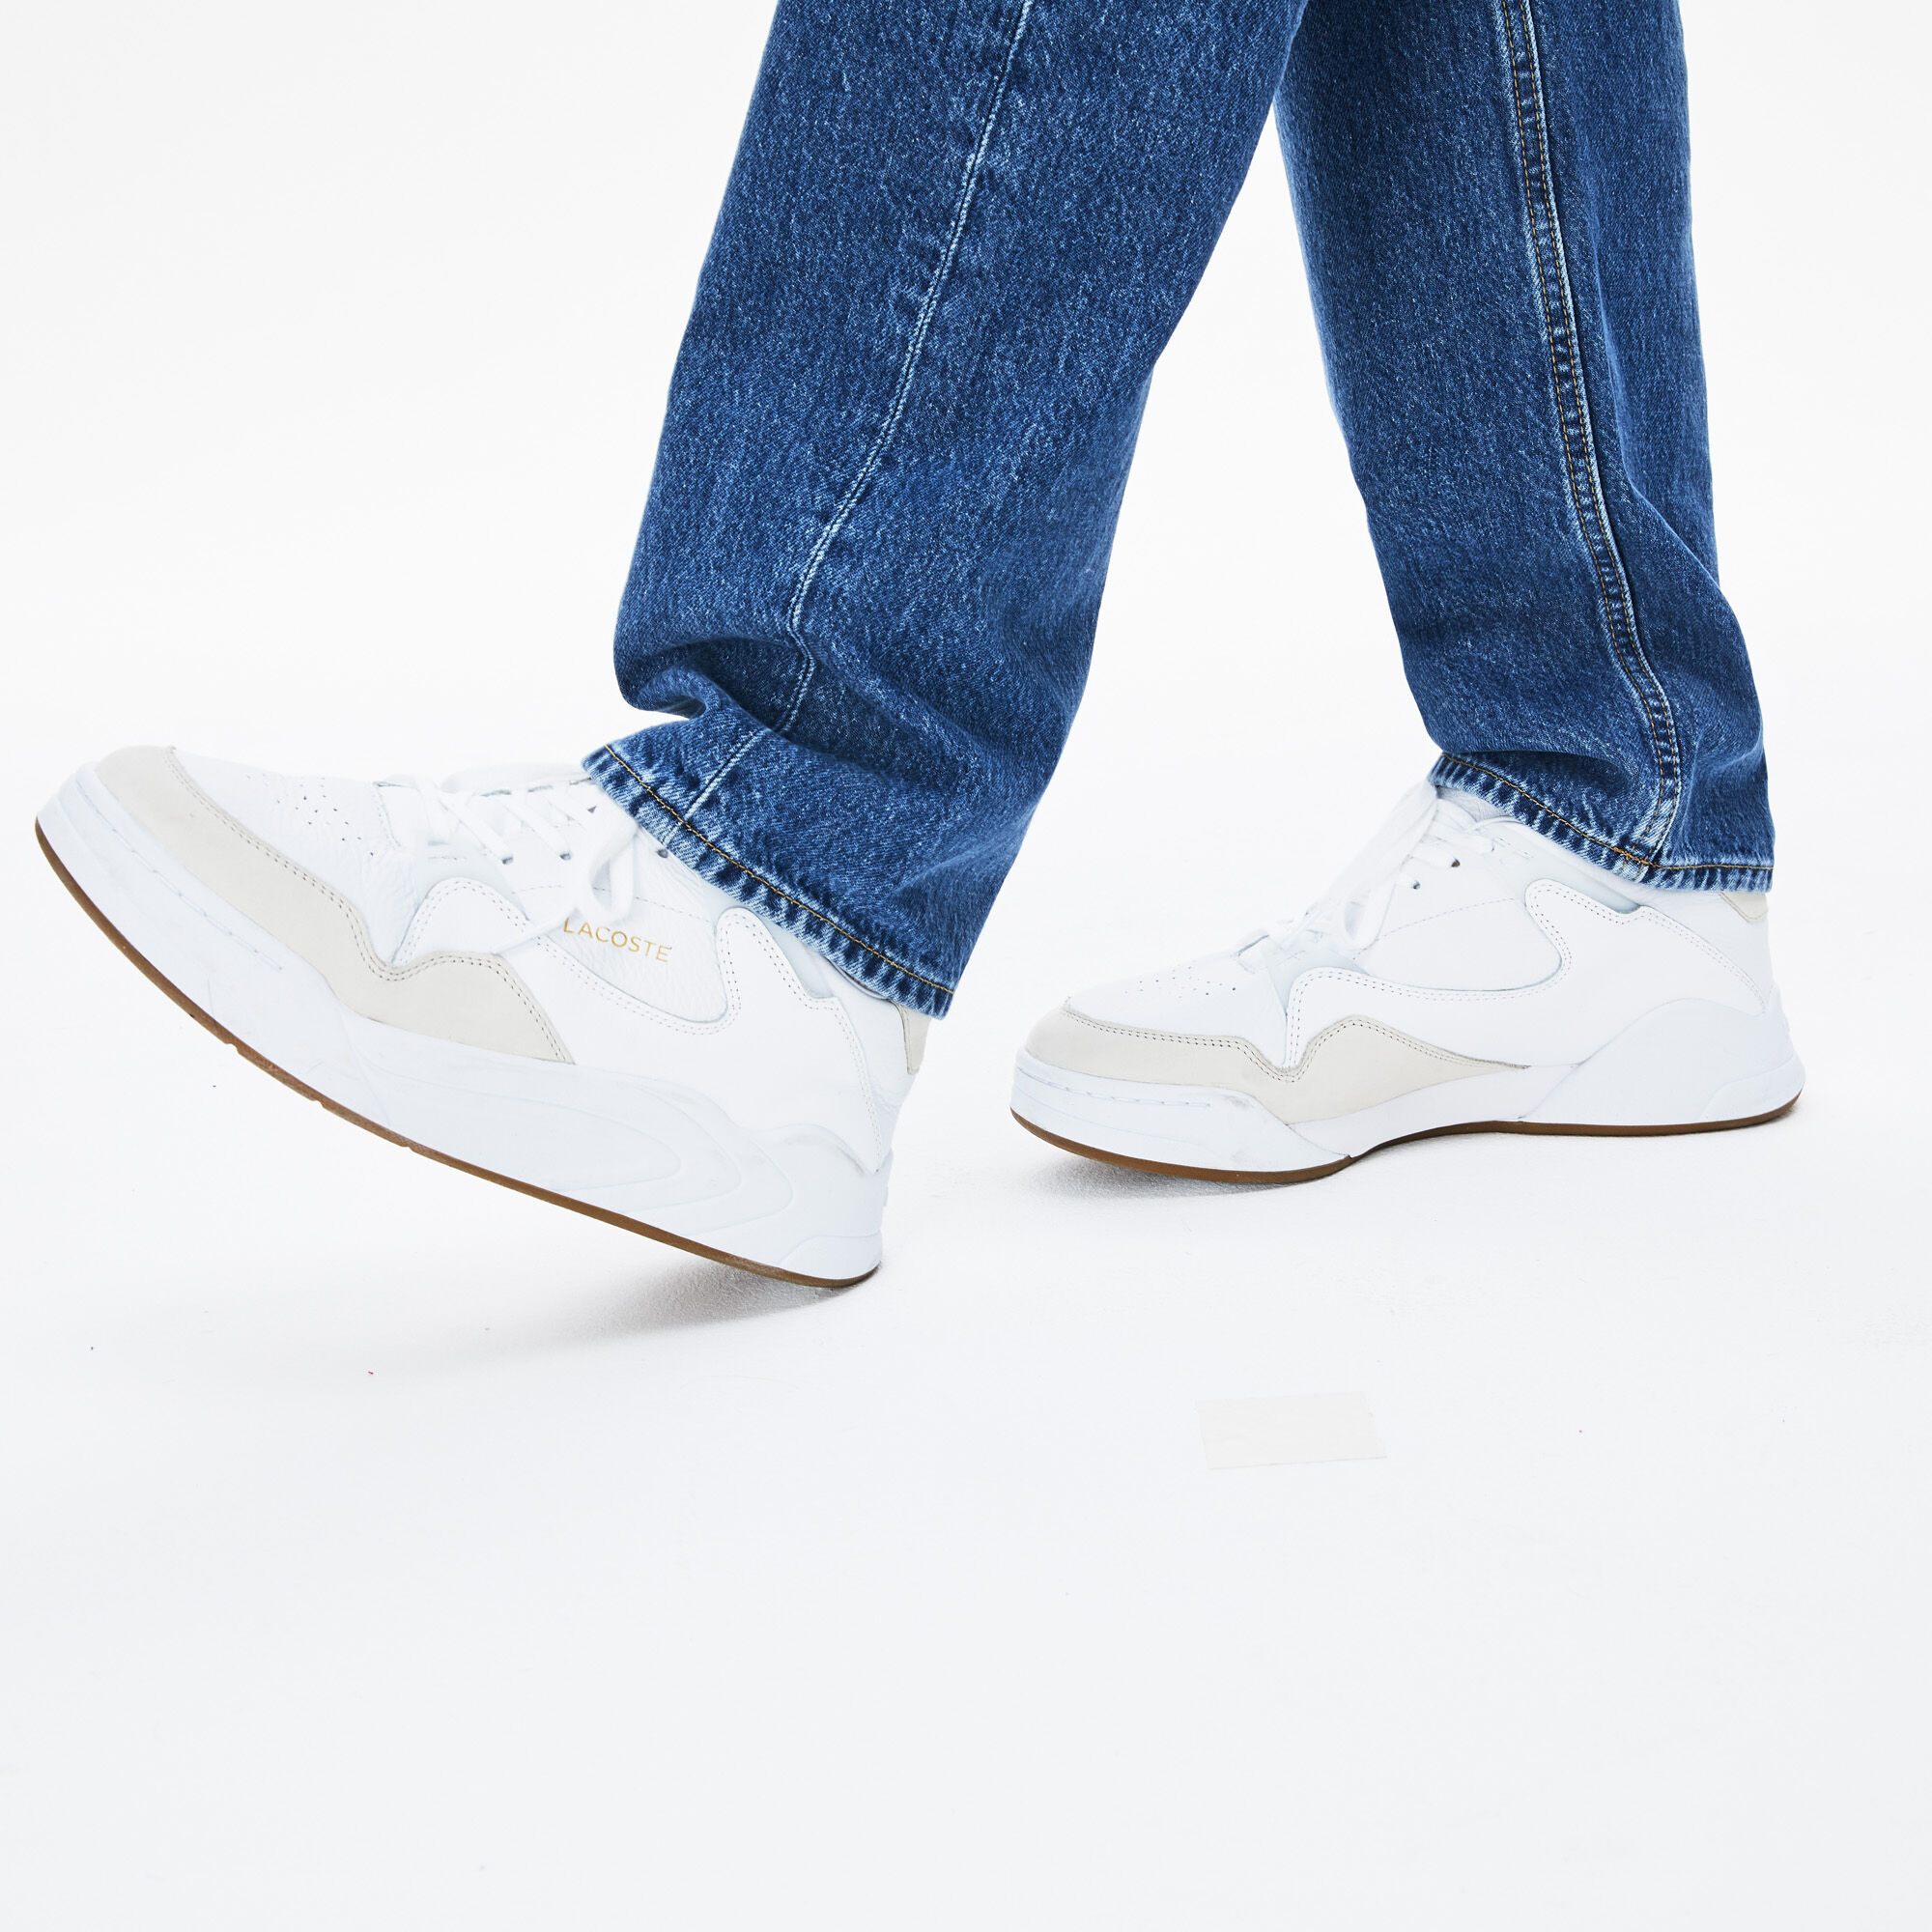 حذاء رياضي للرجال من الجلد بدرجات لون واحد متناغمة من مجموعة Court Slam